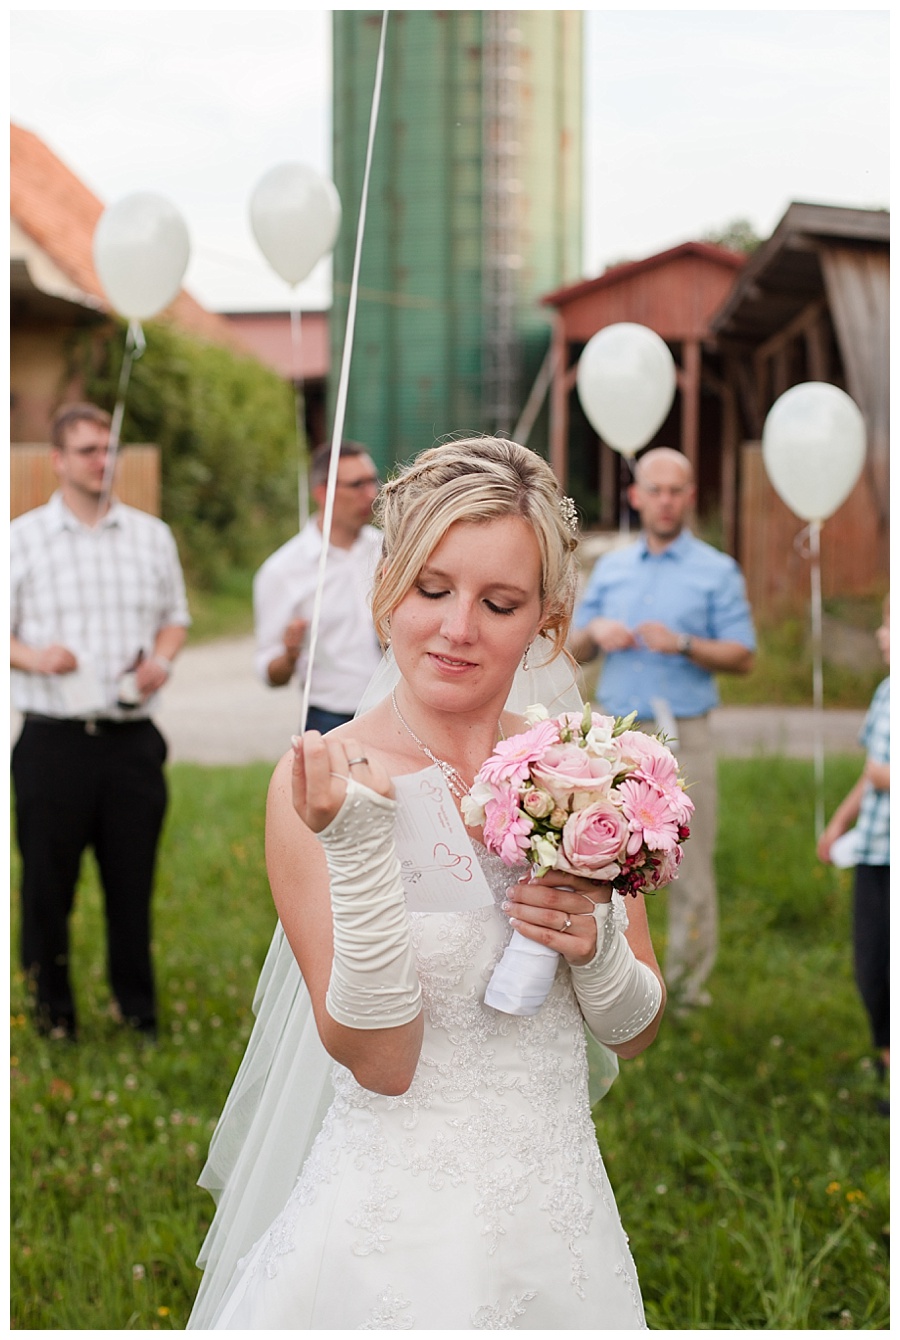 ballon release german wedding